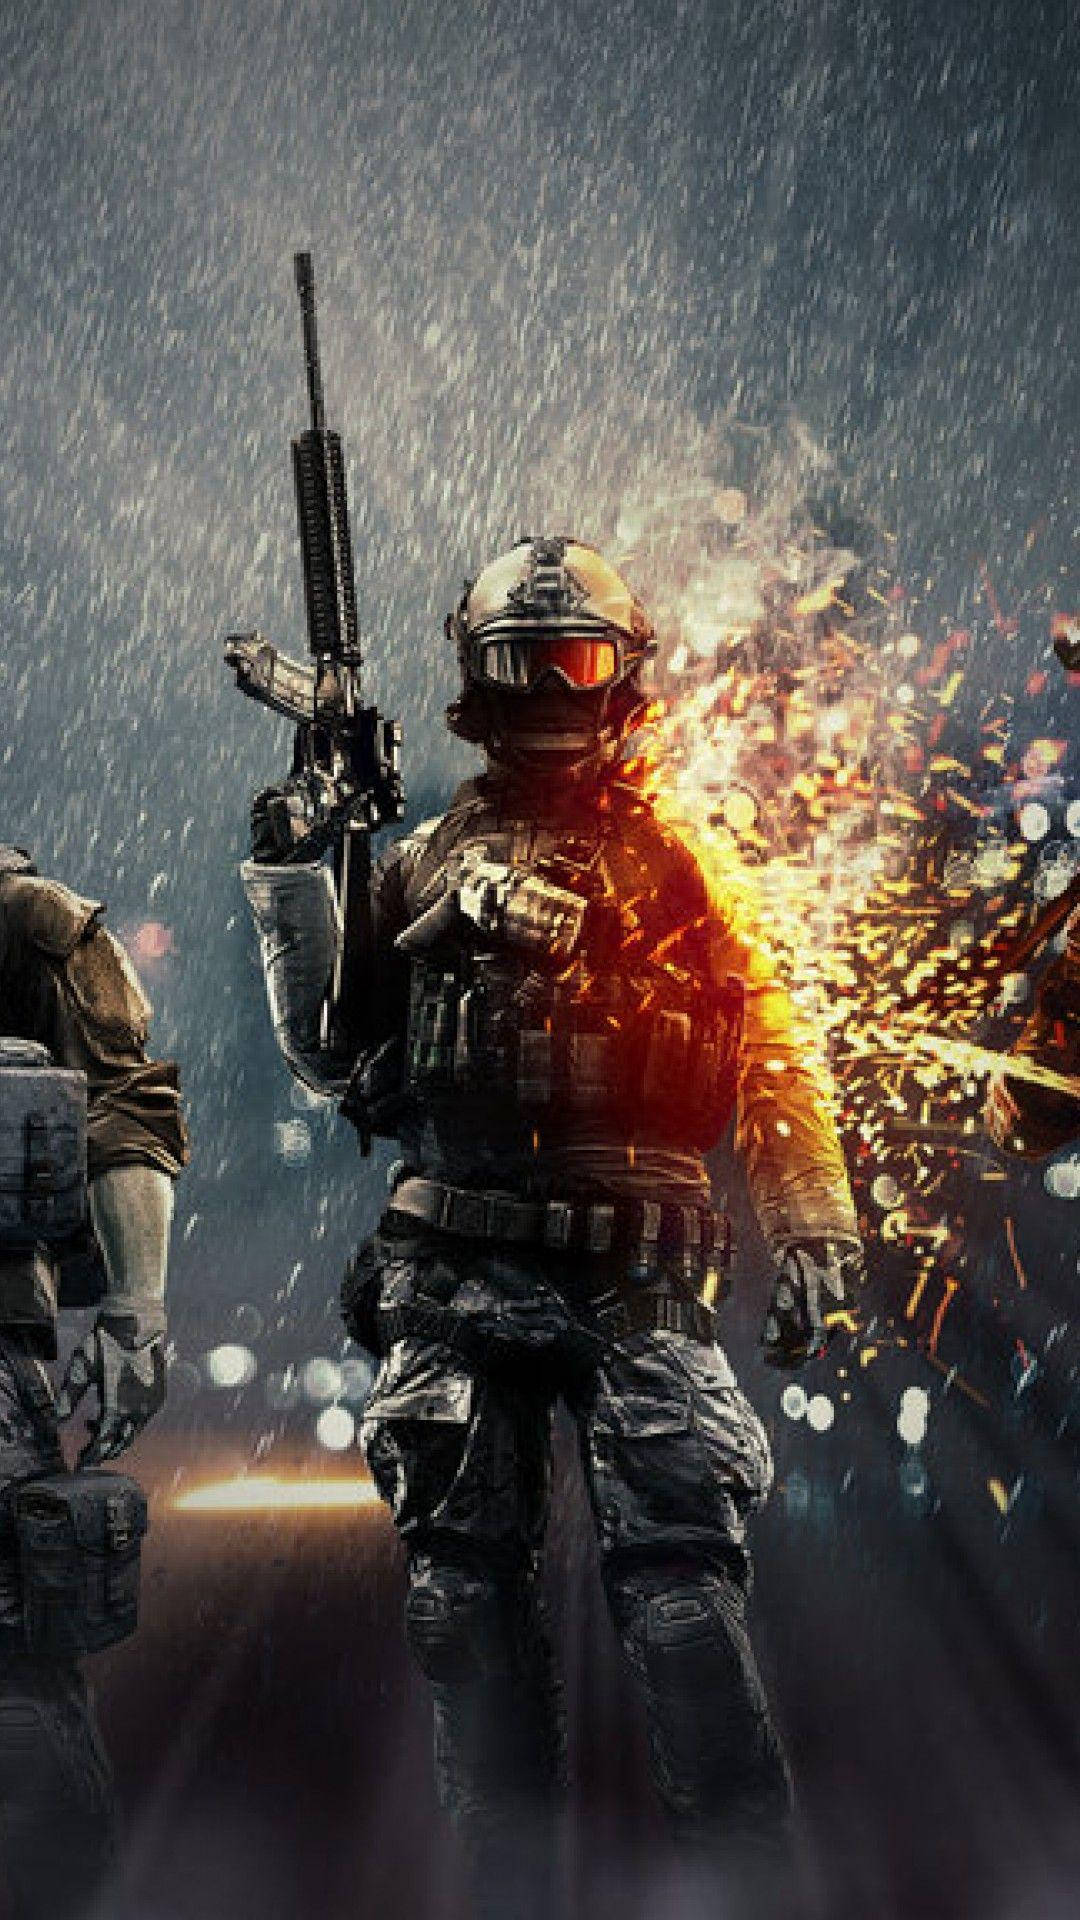 Desktop Wallpaper Battlefield 4 Video Game Solider Gun Hd Image  Picture Background Sqpoxm